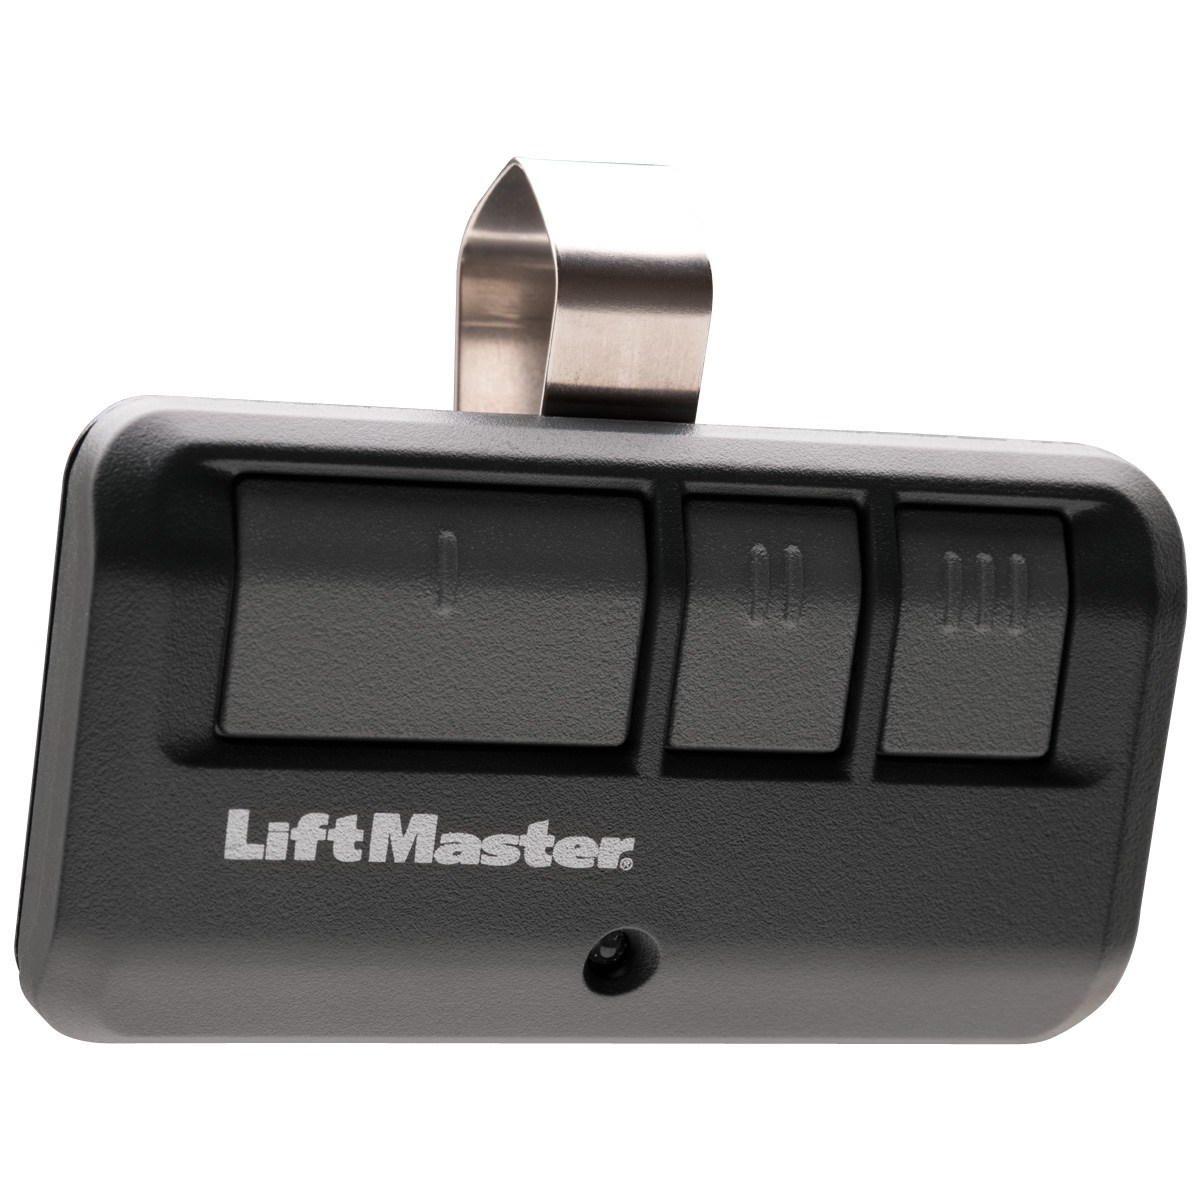 LiftMaster Opener – 8365 garage doors